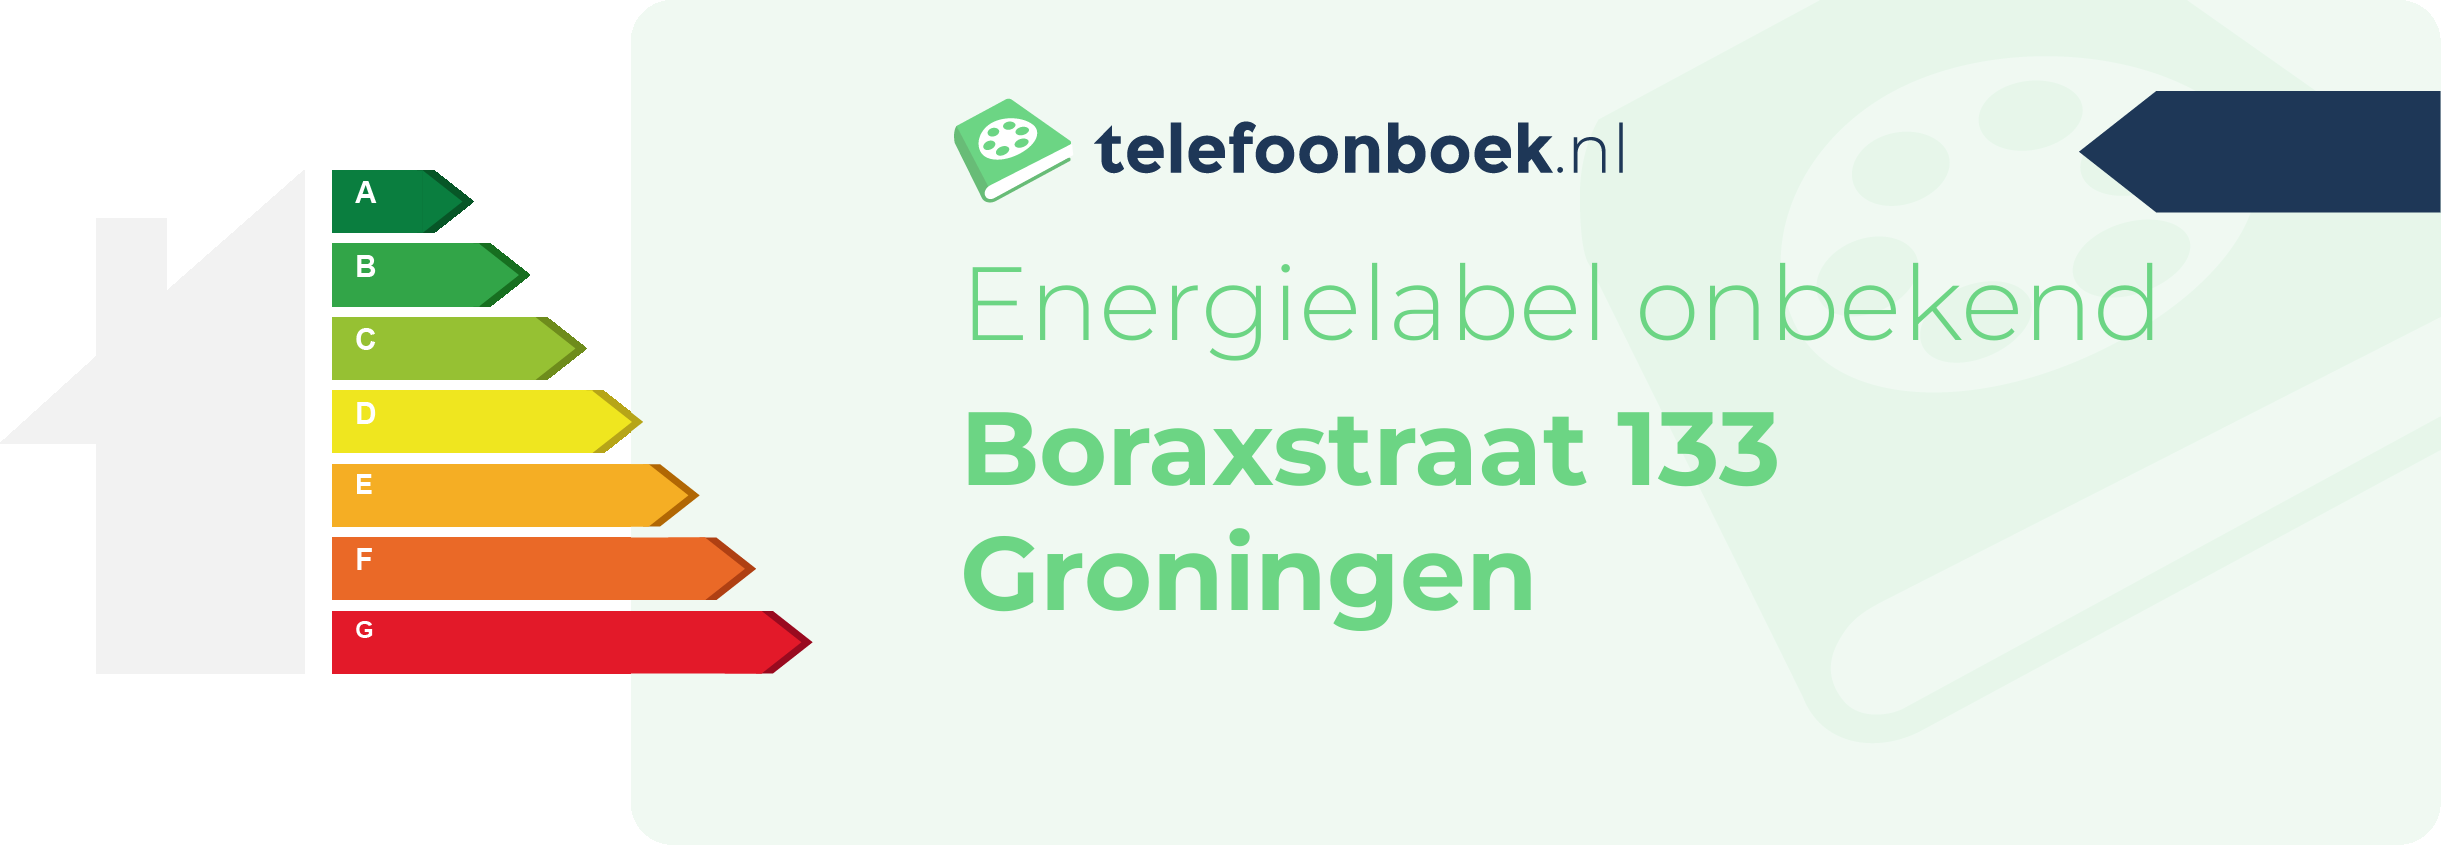 Energielabel Boraxstraat 133 Groningen